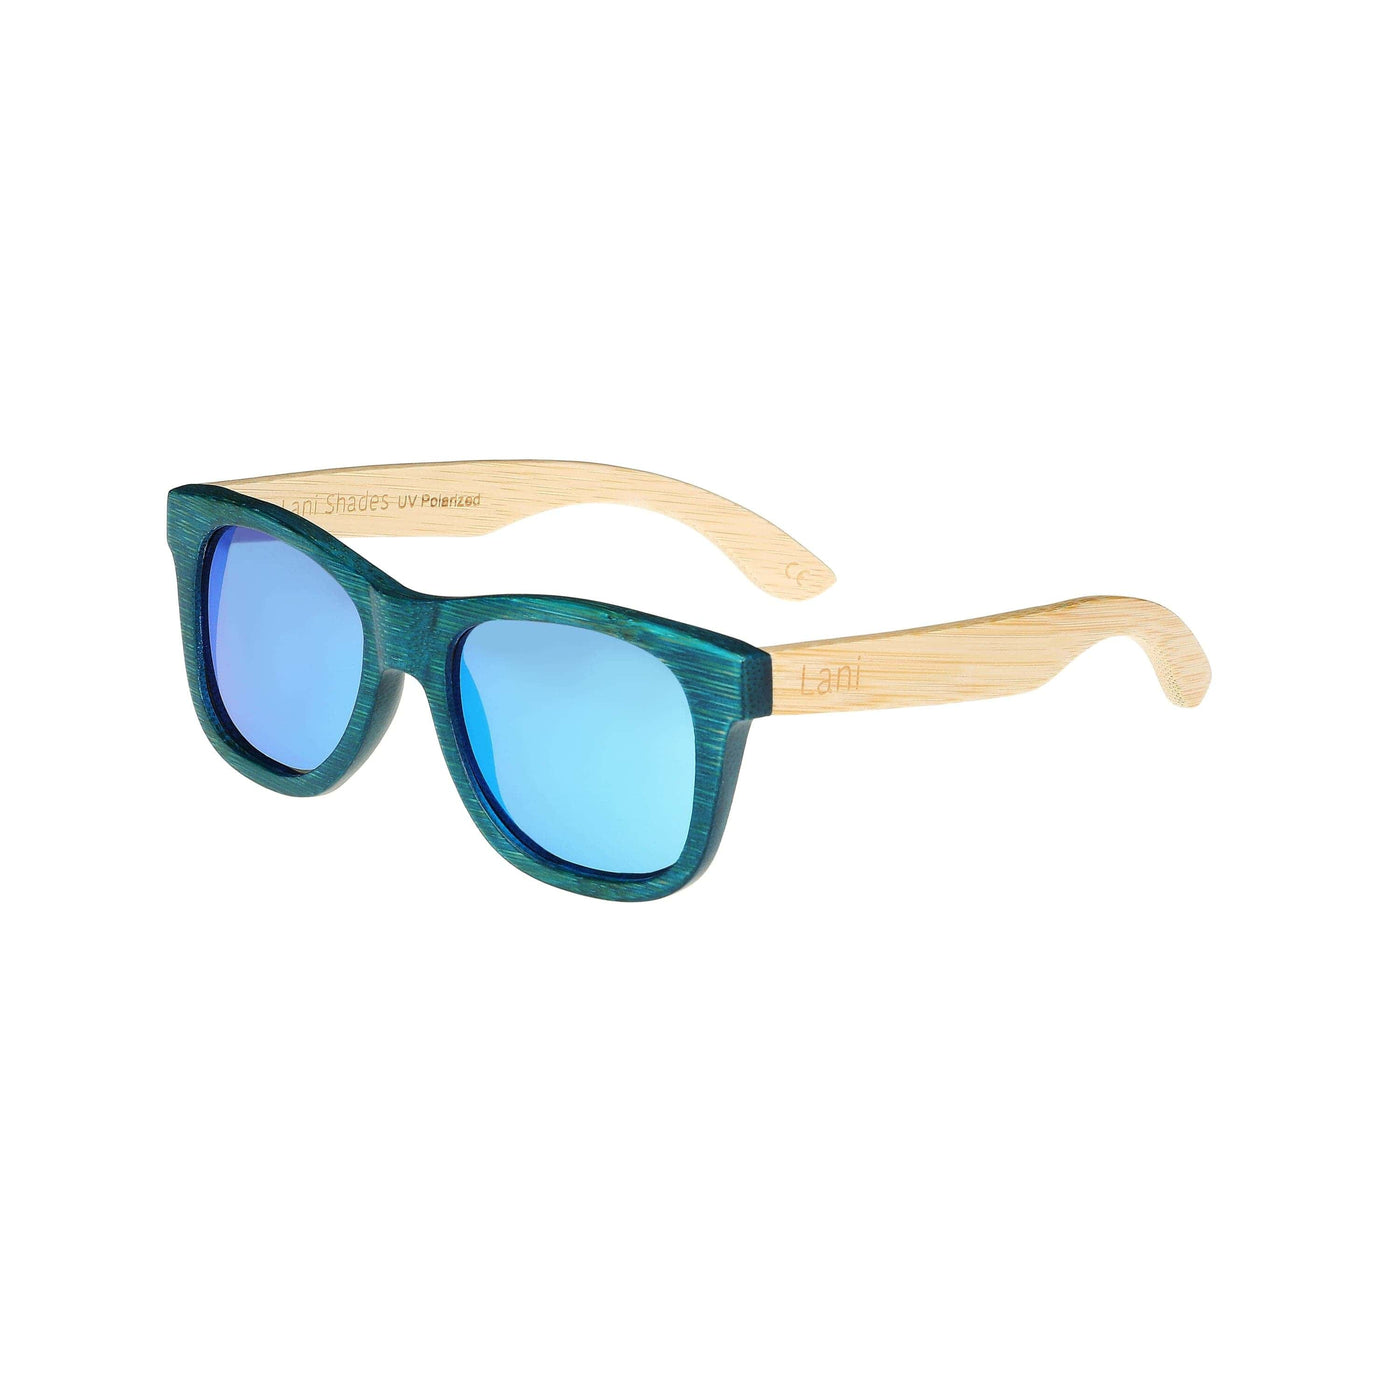 Borradura jalea whisky Polarized Sustainable Bamboo Wood Floating Sunglasses | Lani Shades